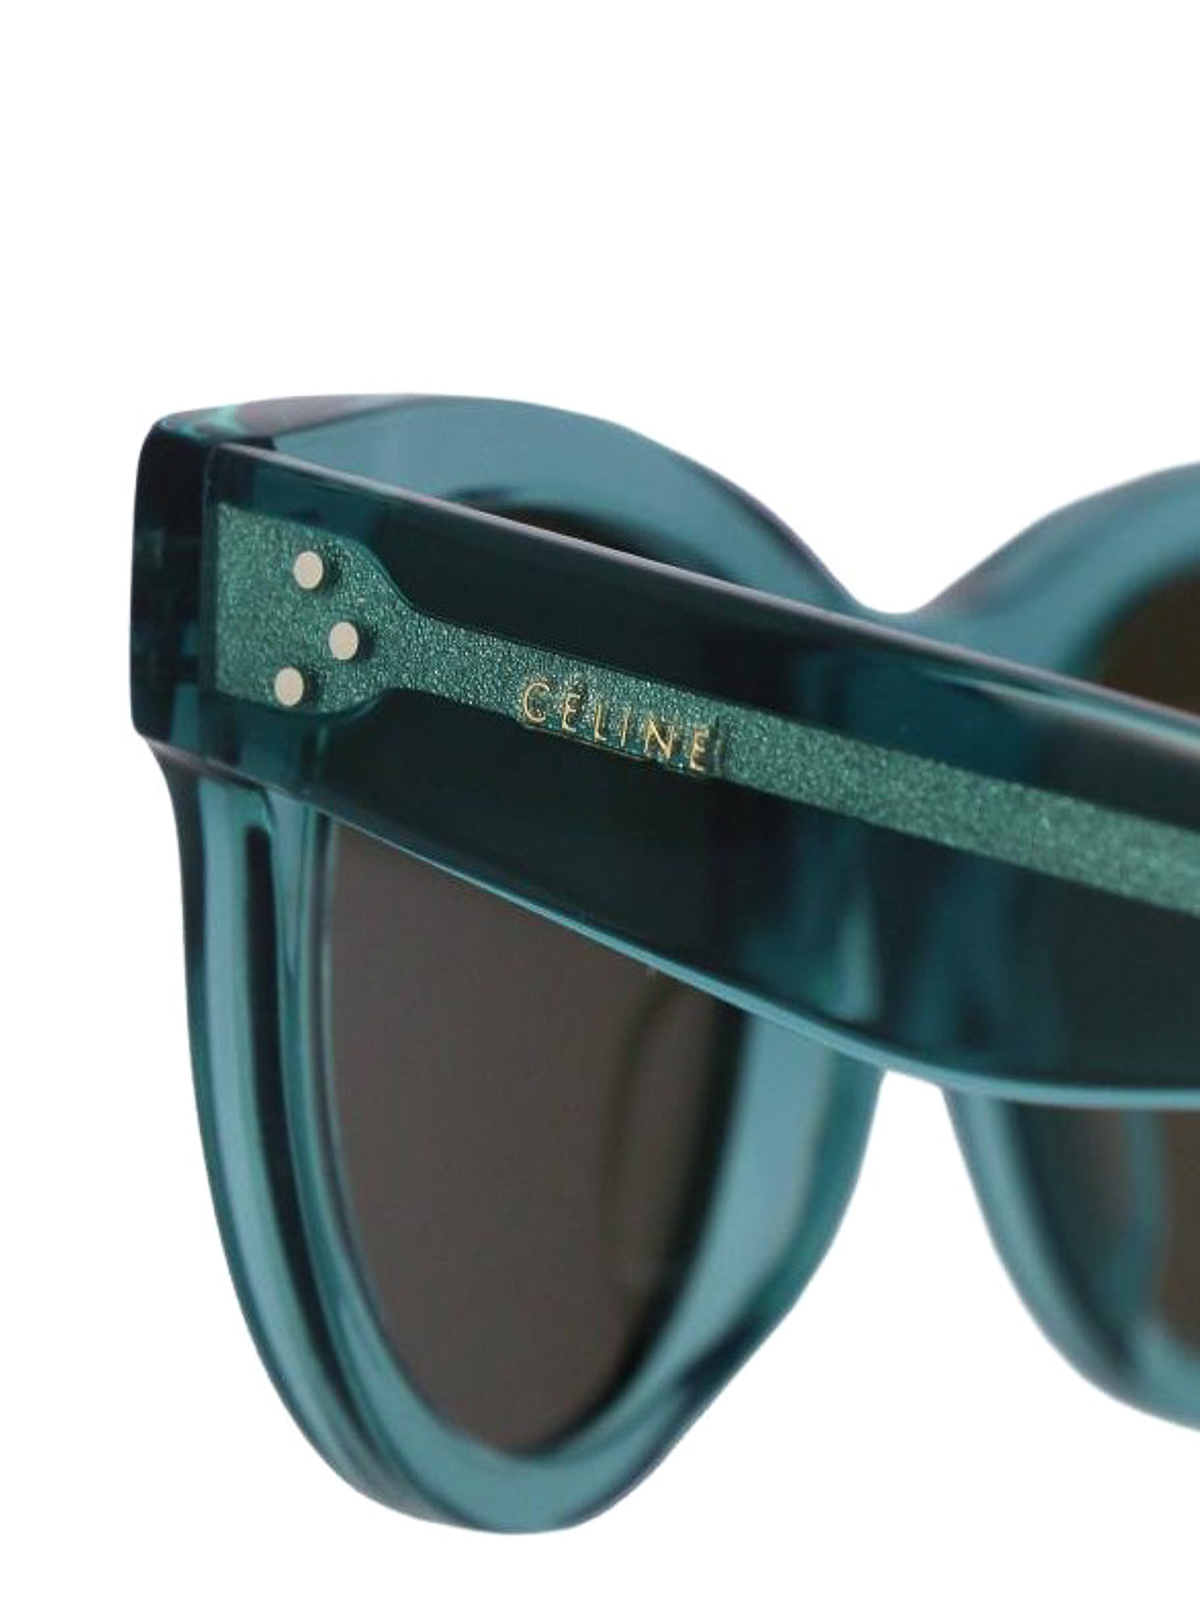 Details more than 66 celine preppy sunglasses latest